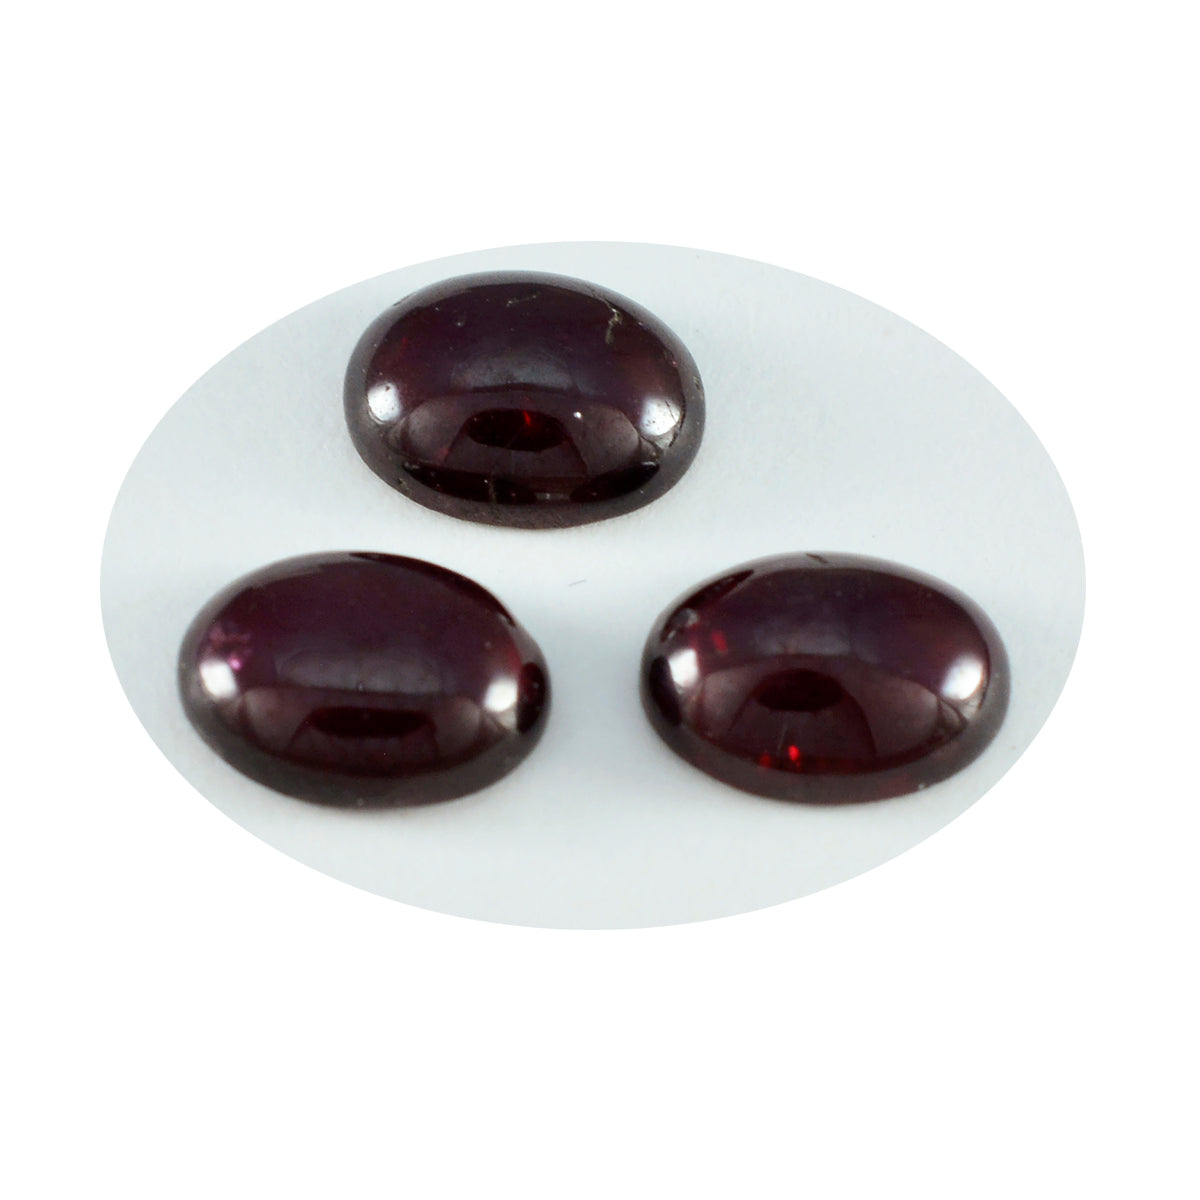 Riyogems 1 Stück roter Granat-Cabochon, 10 x 12 mm, ovale Form, hübscher Qualitätsstein